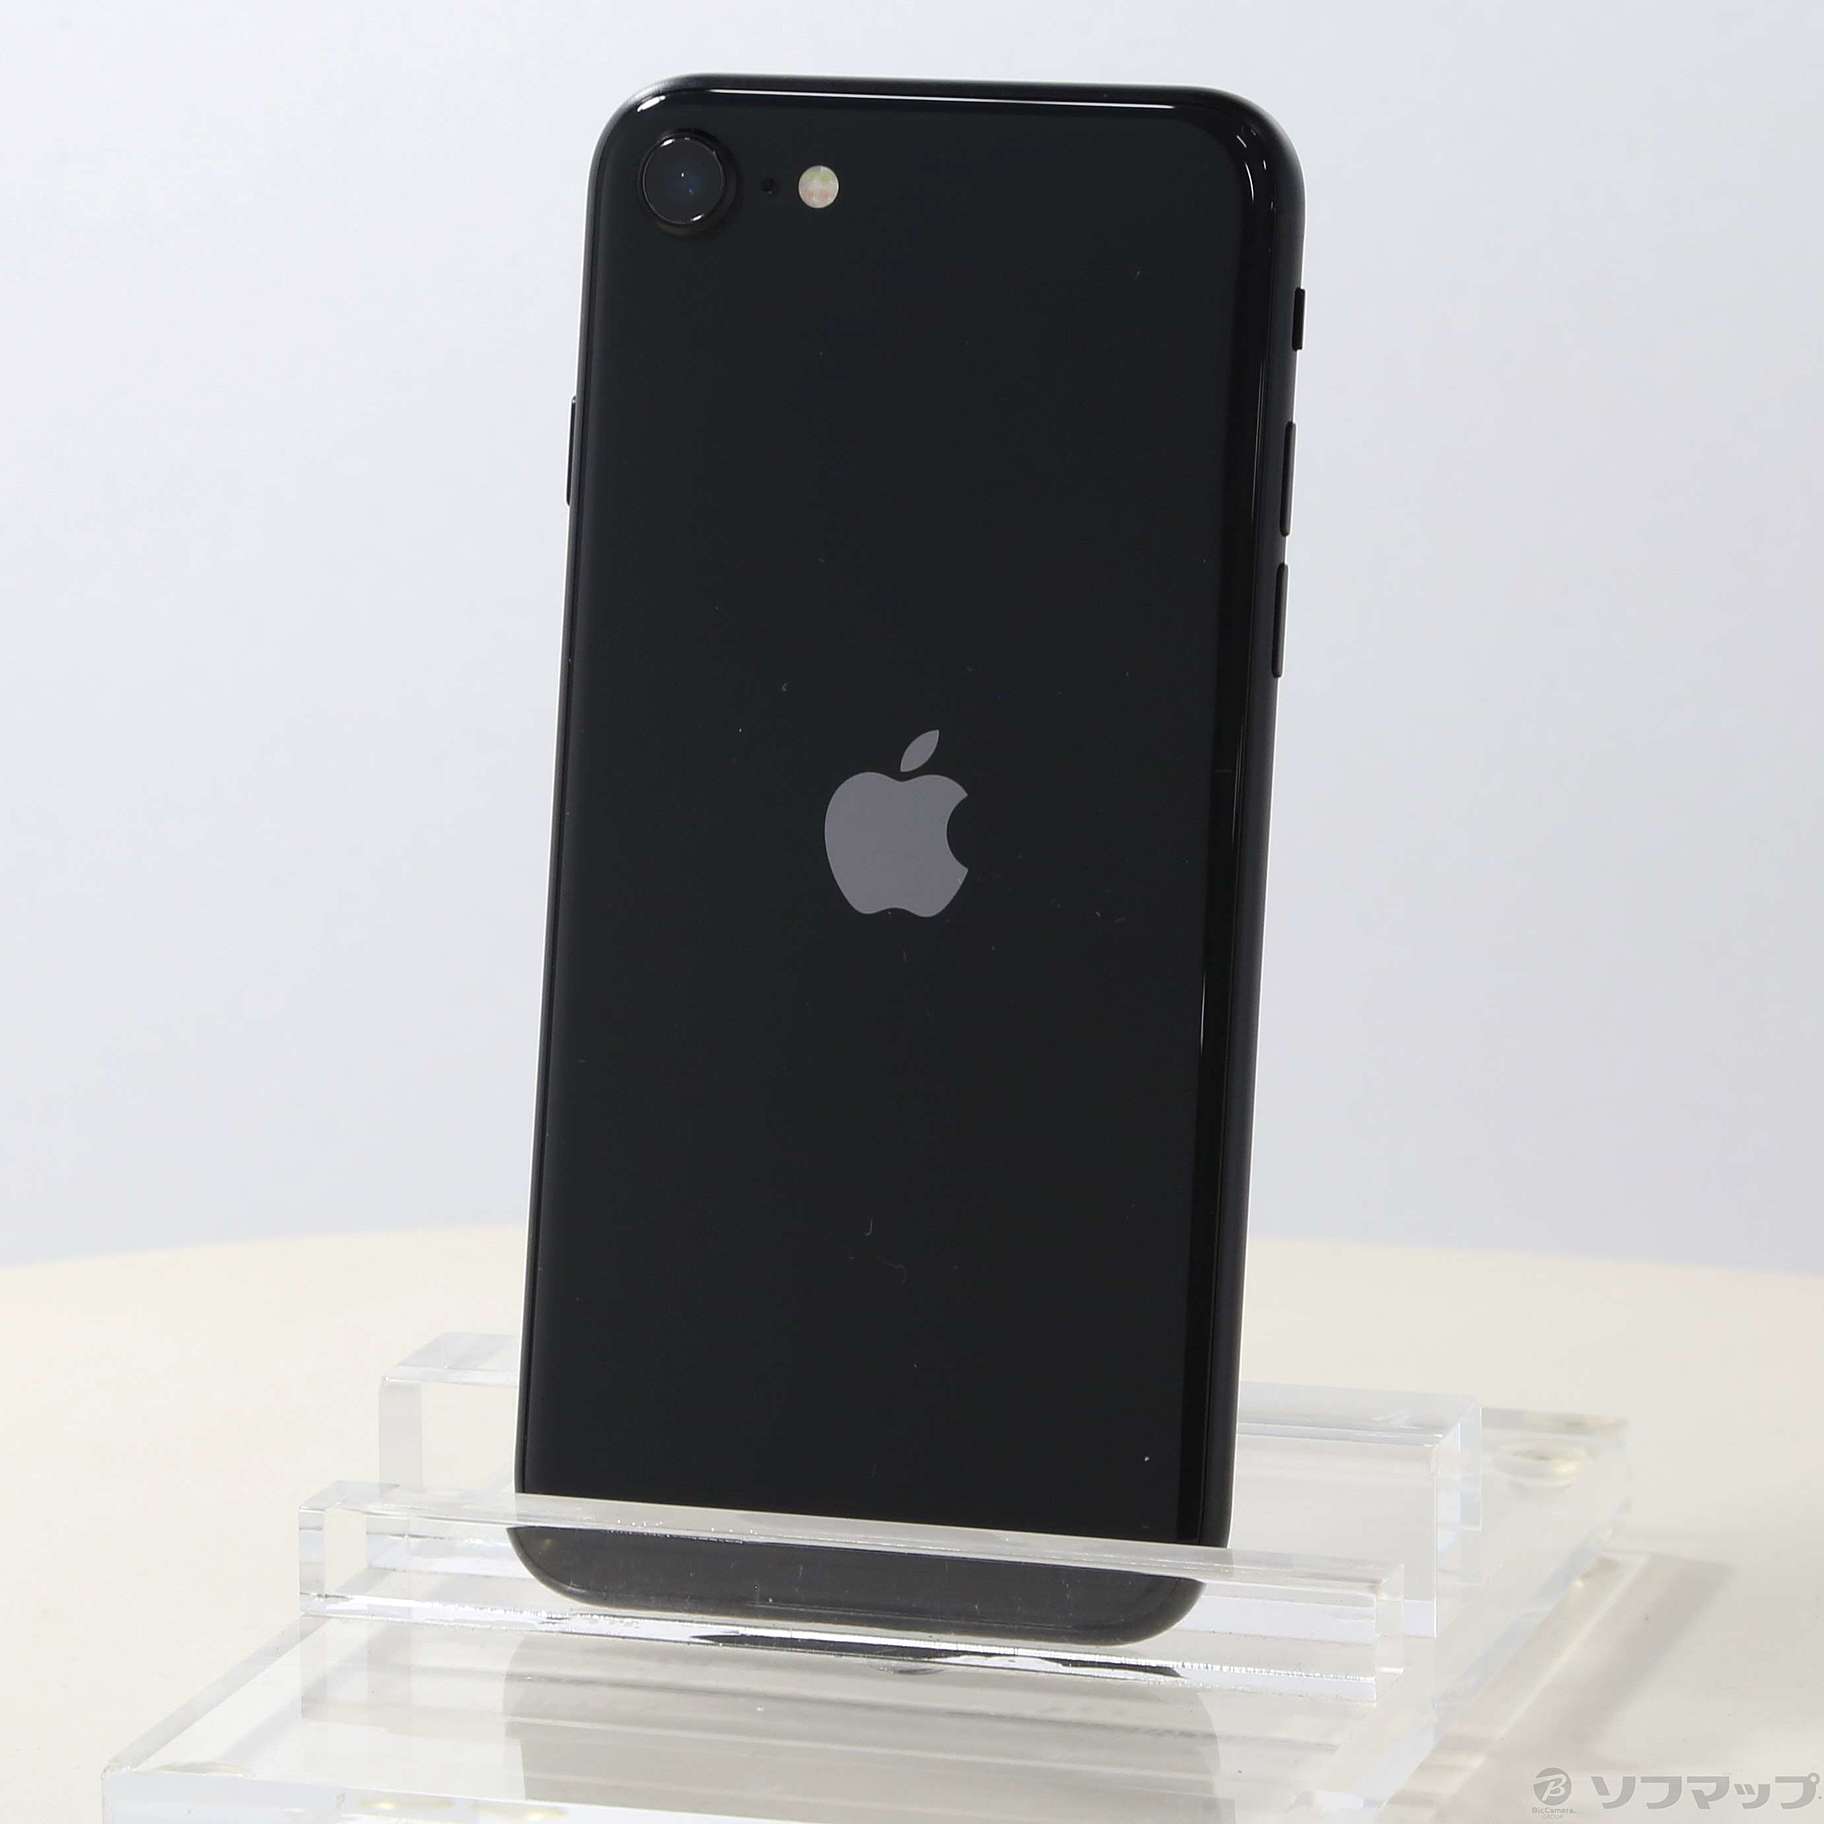 有顔認証アップル iPhoneSE 第2世代 64GB ブラック から購入